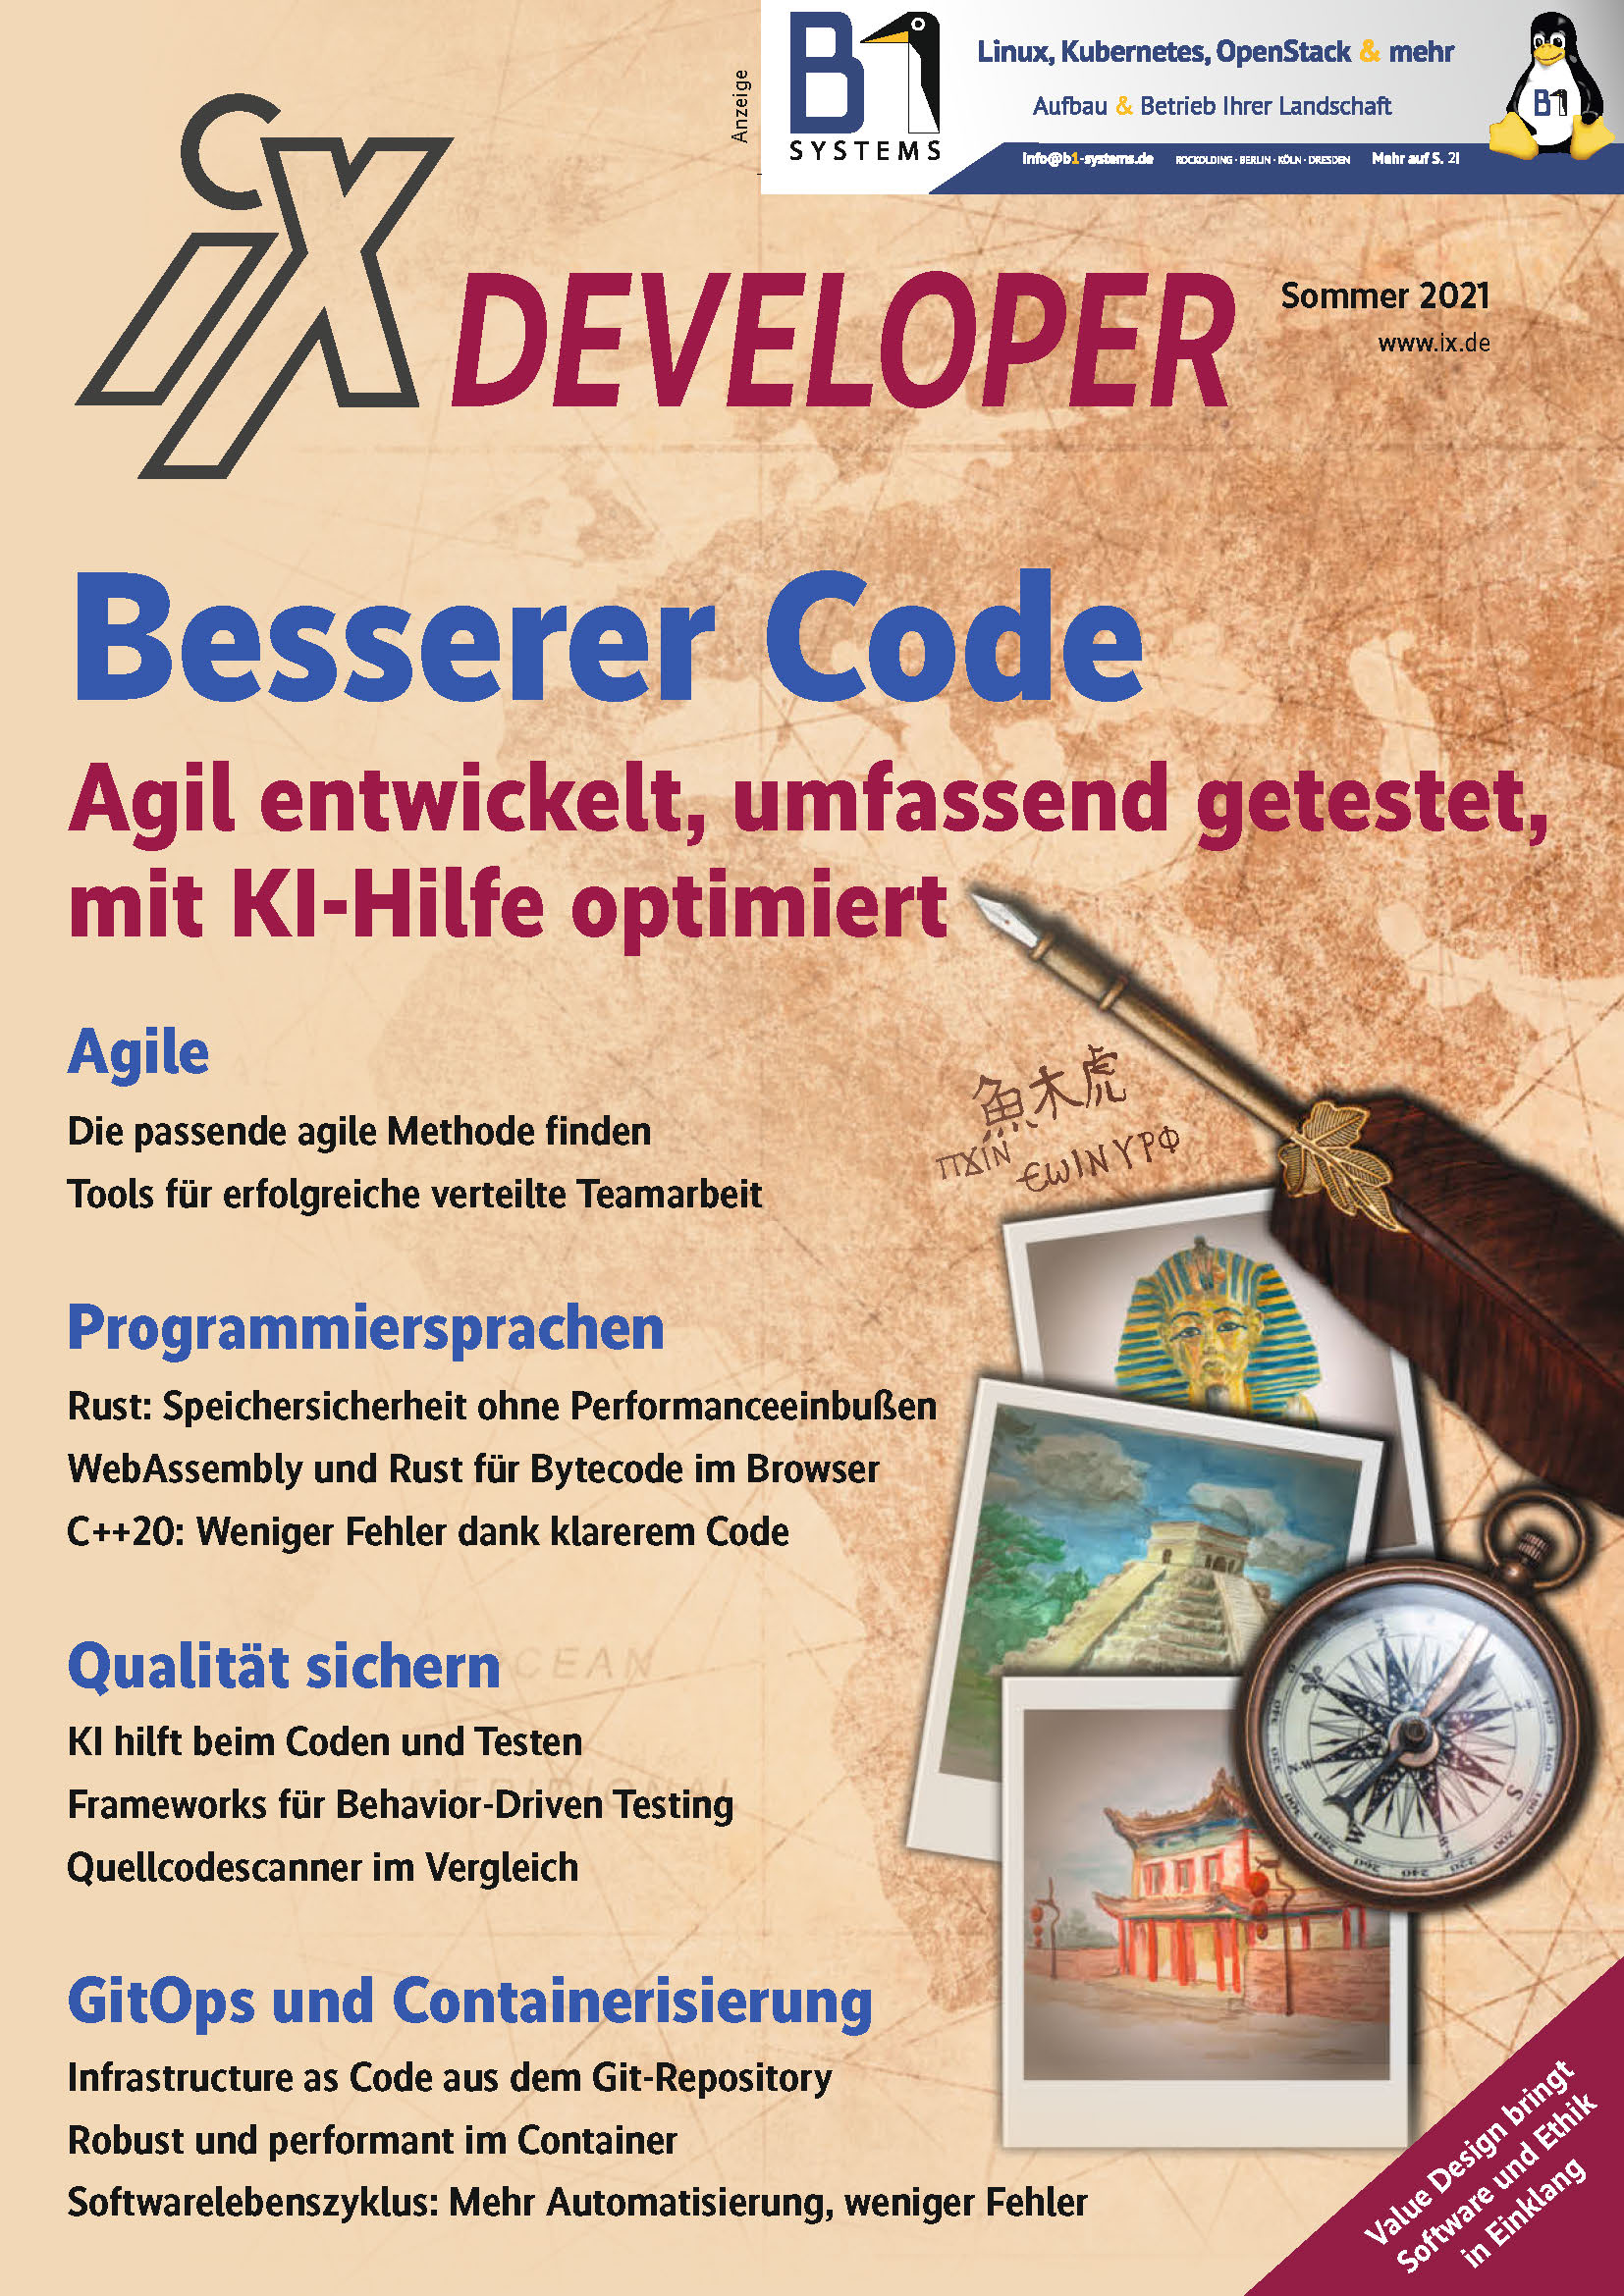 iX Developer Besserer Code 2021